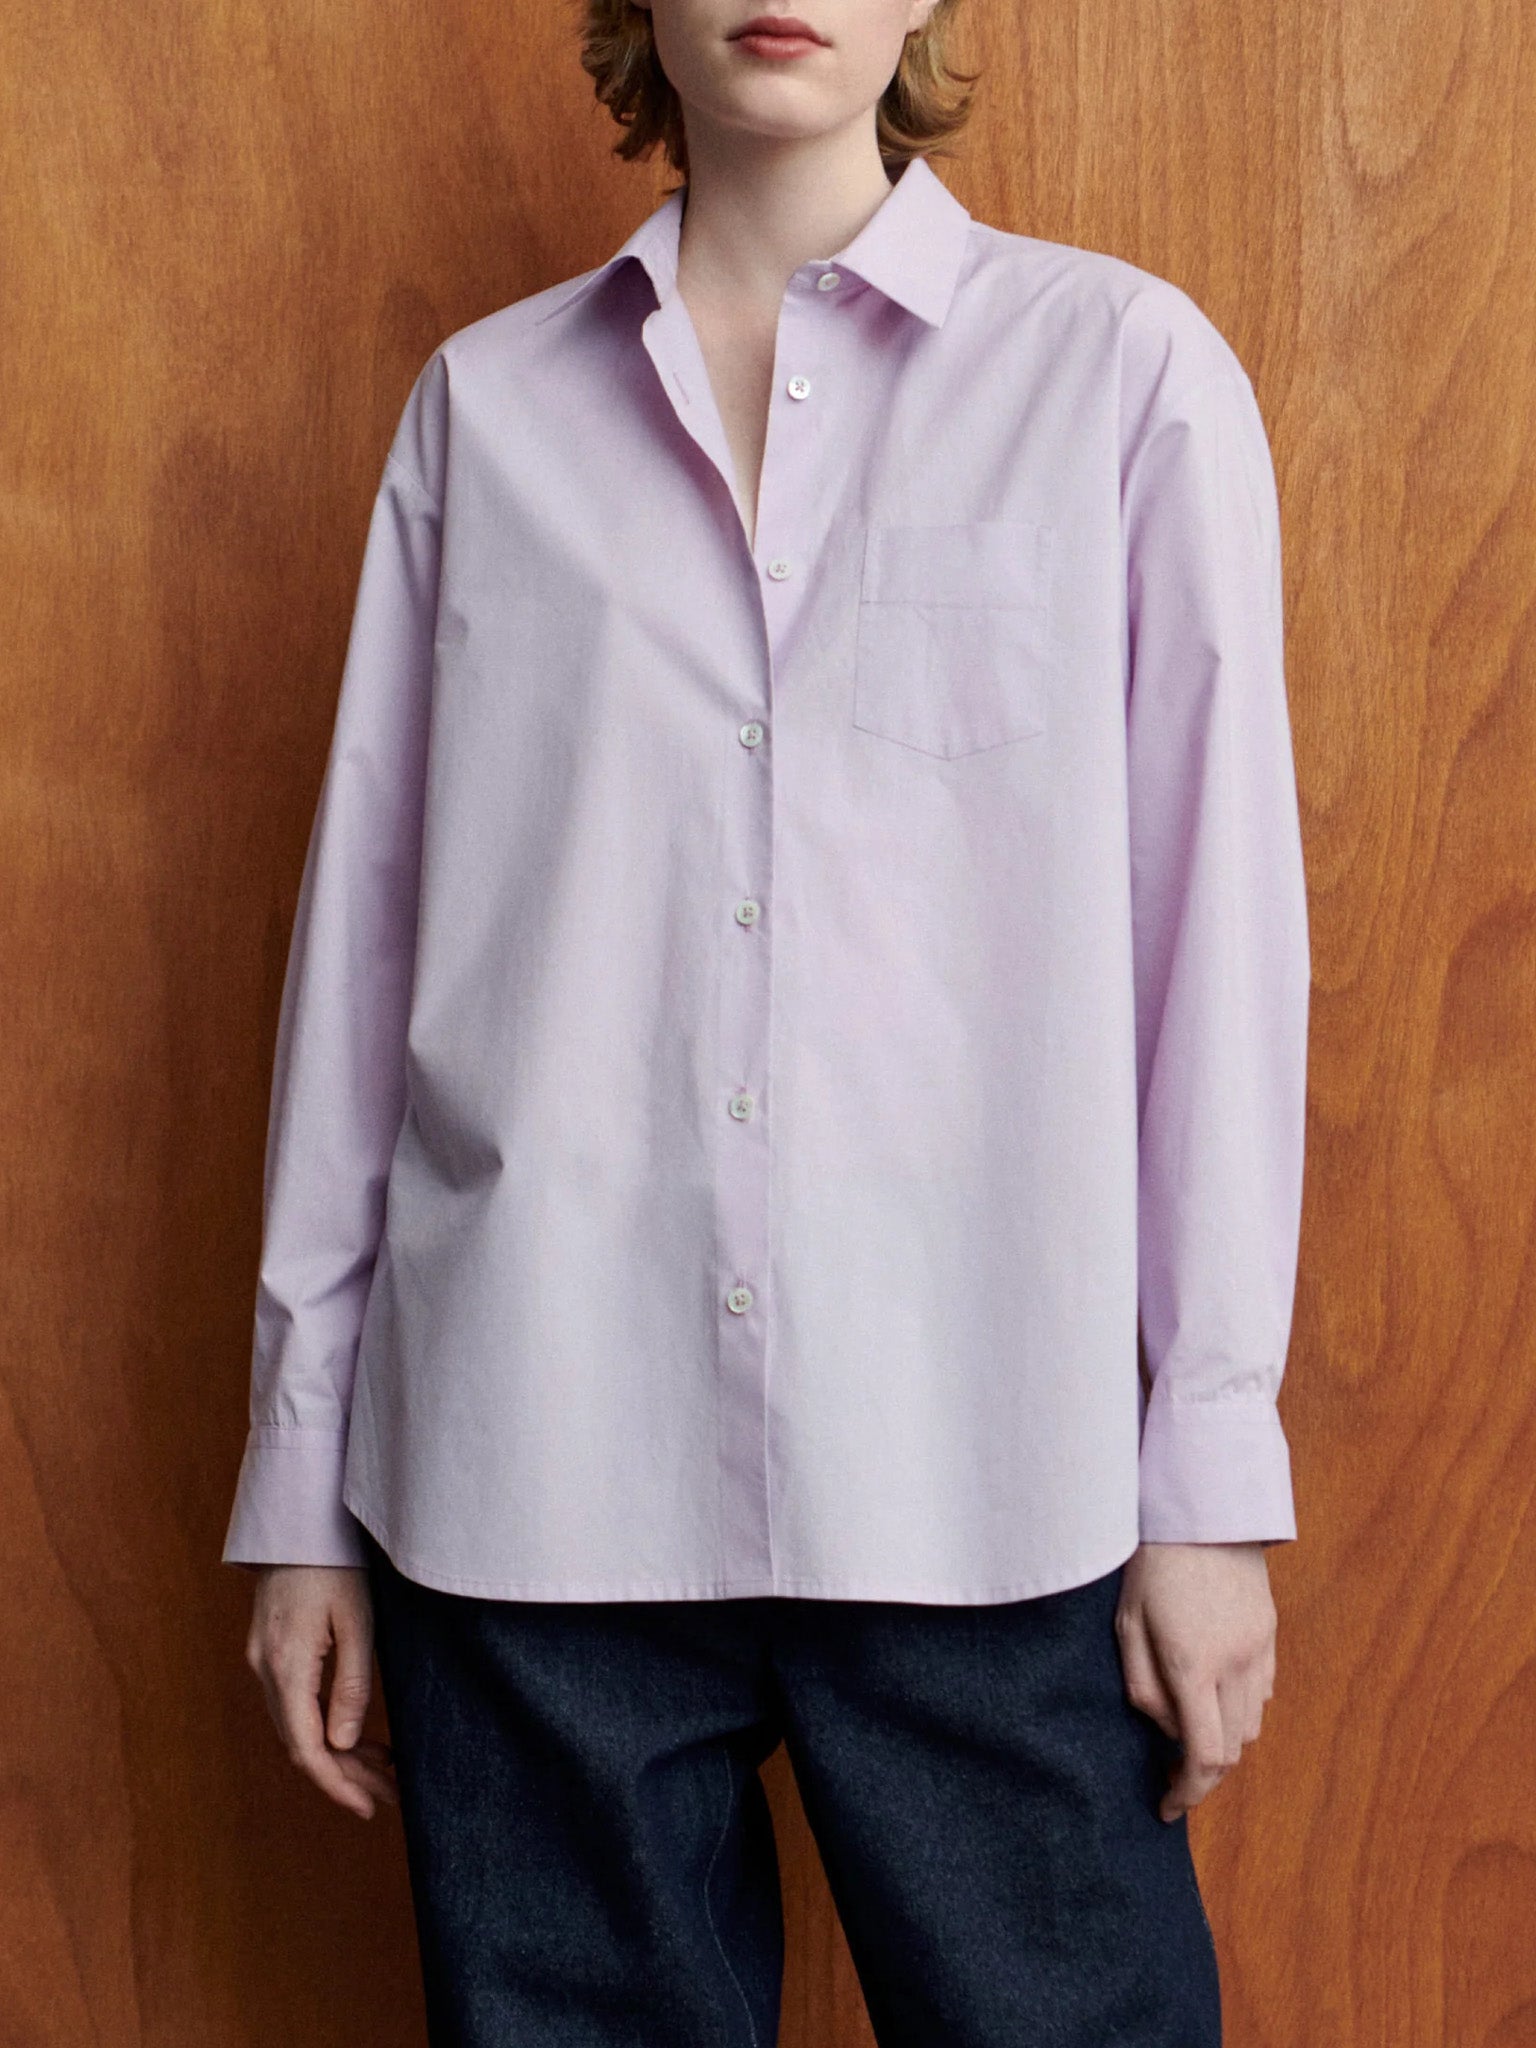 Namu Shop - Jan Machenhauer Galla Shirt - Lilac Cotton Poplin